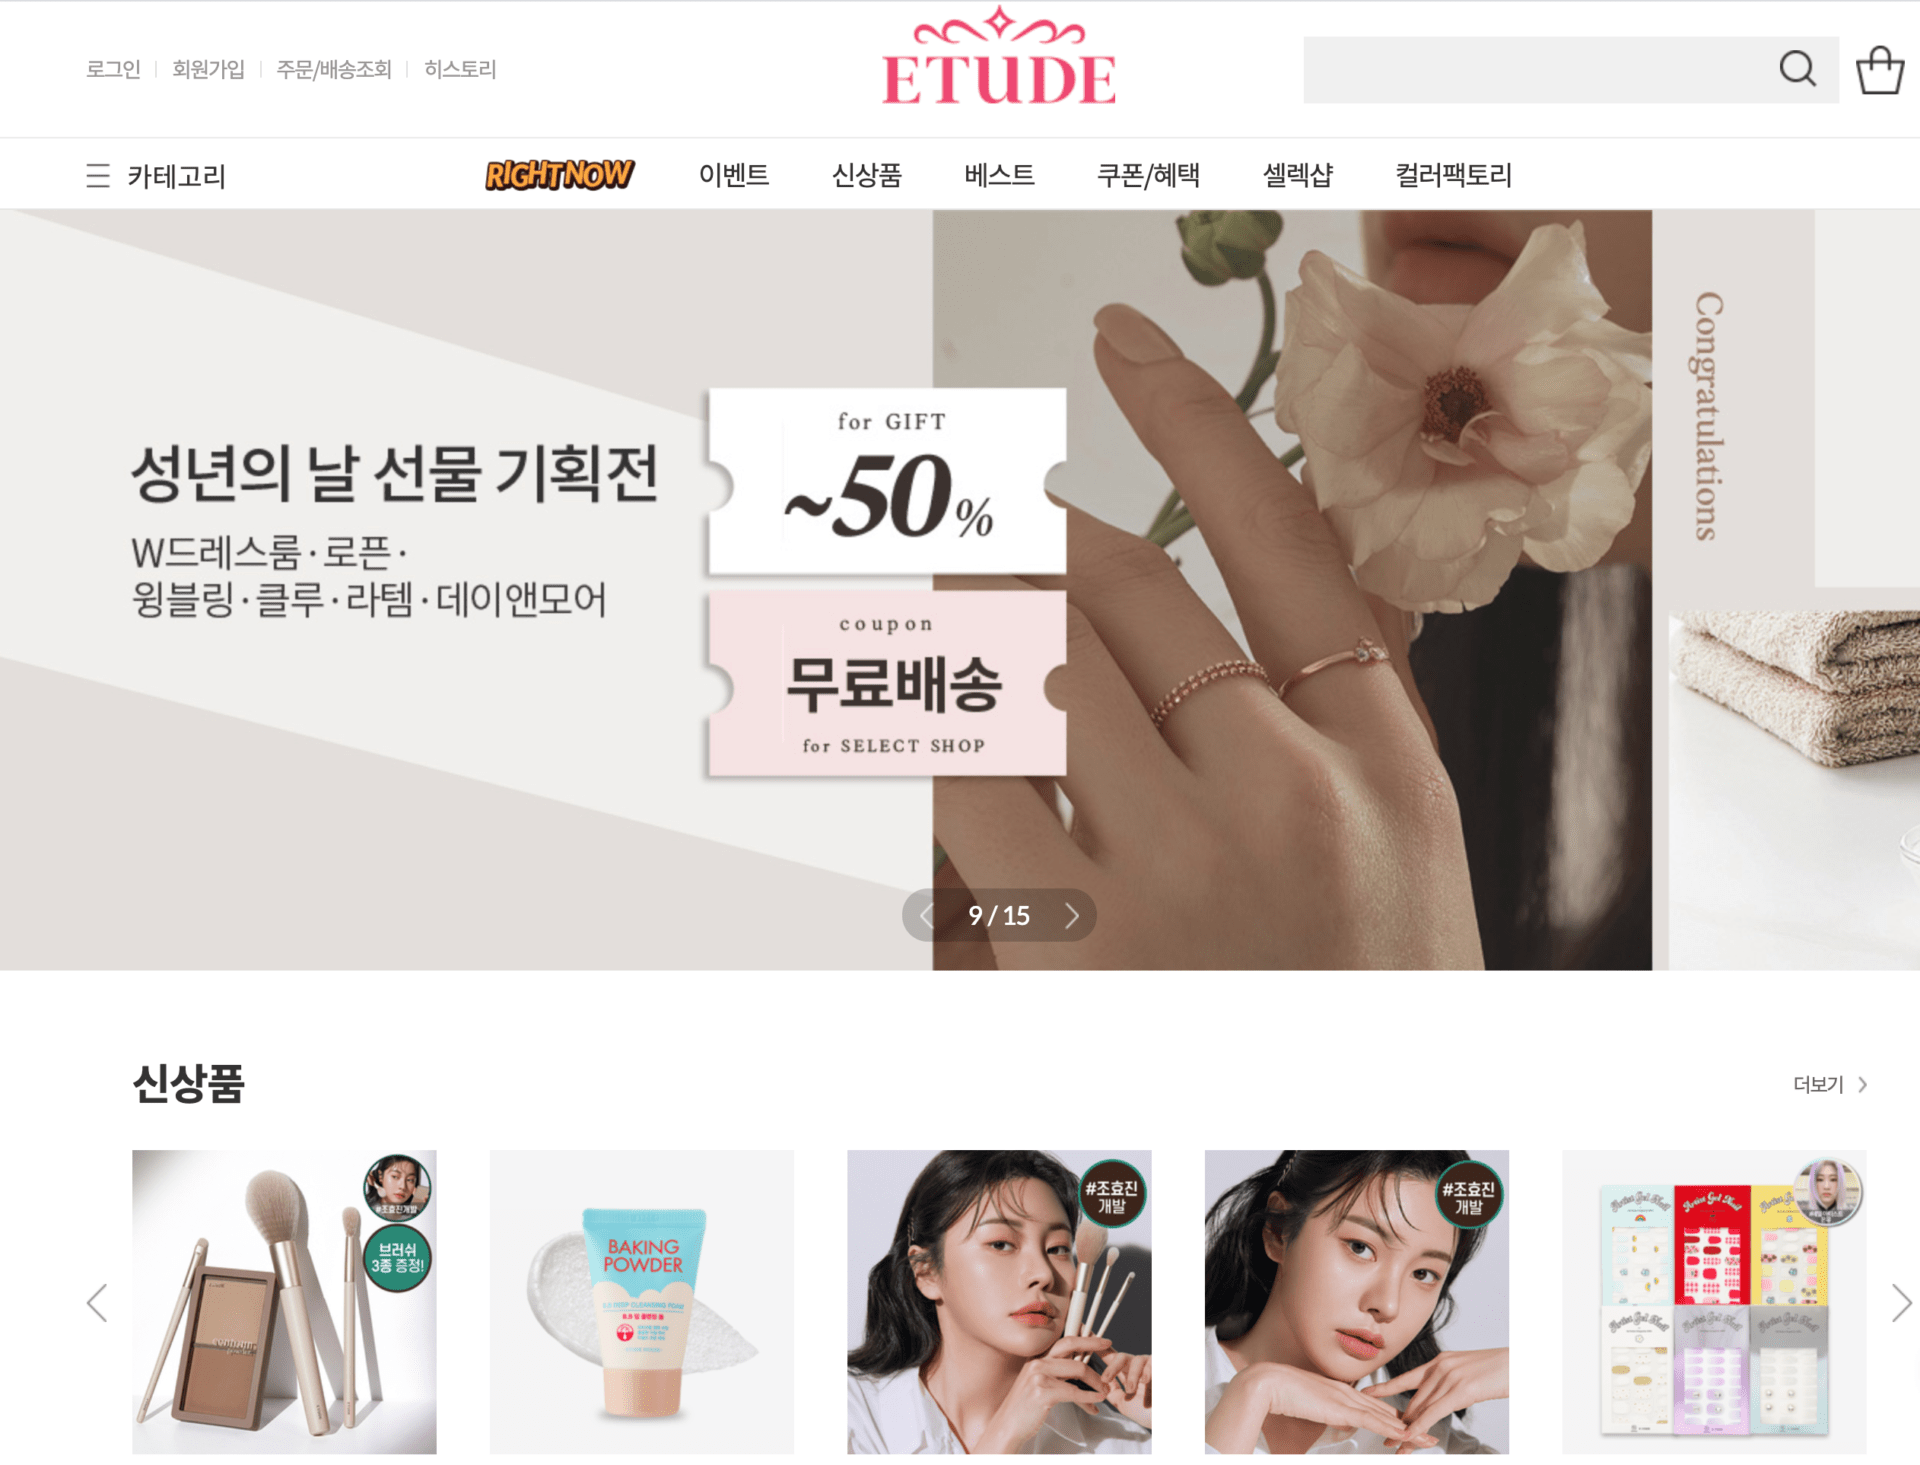 23+ Best Korean Beauty & Skincare Brands 2